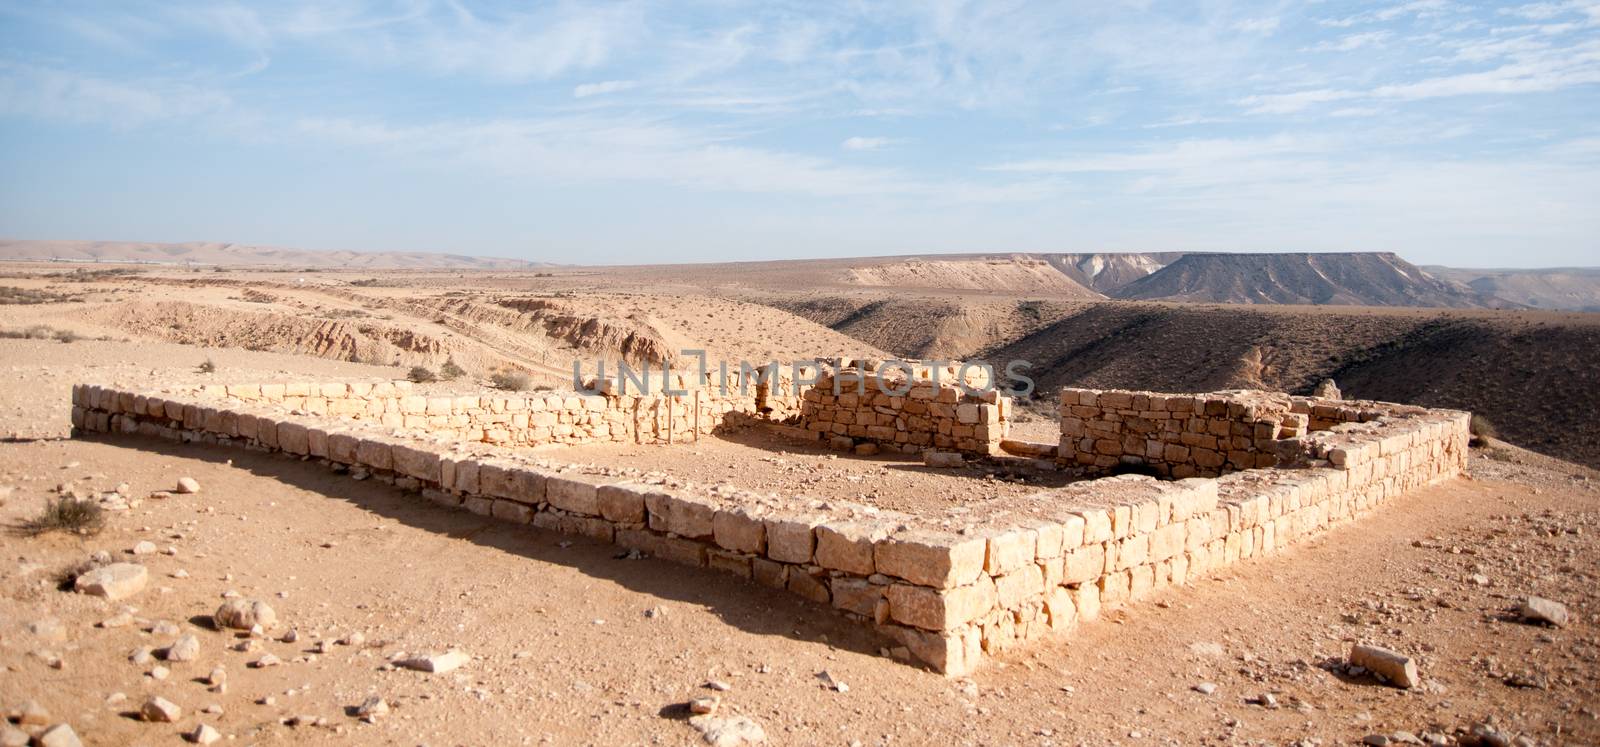 Ancient ruins in Negev Desert by javax